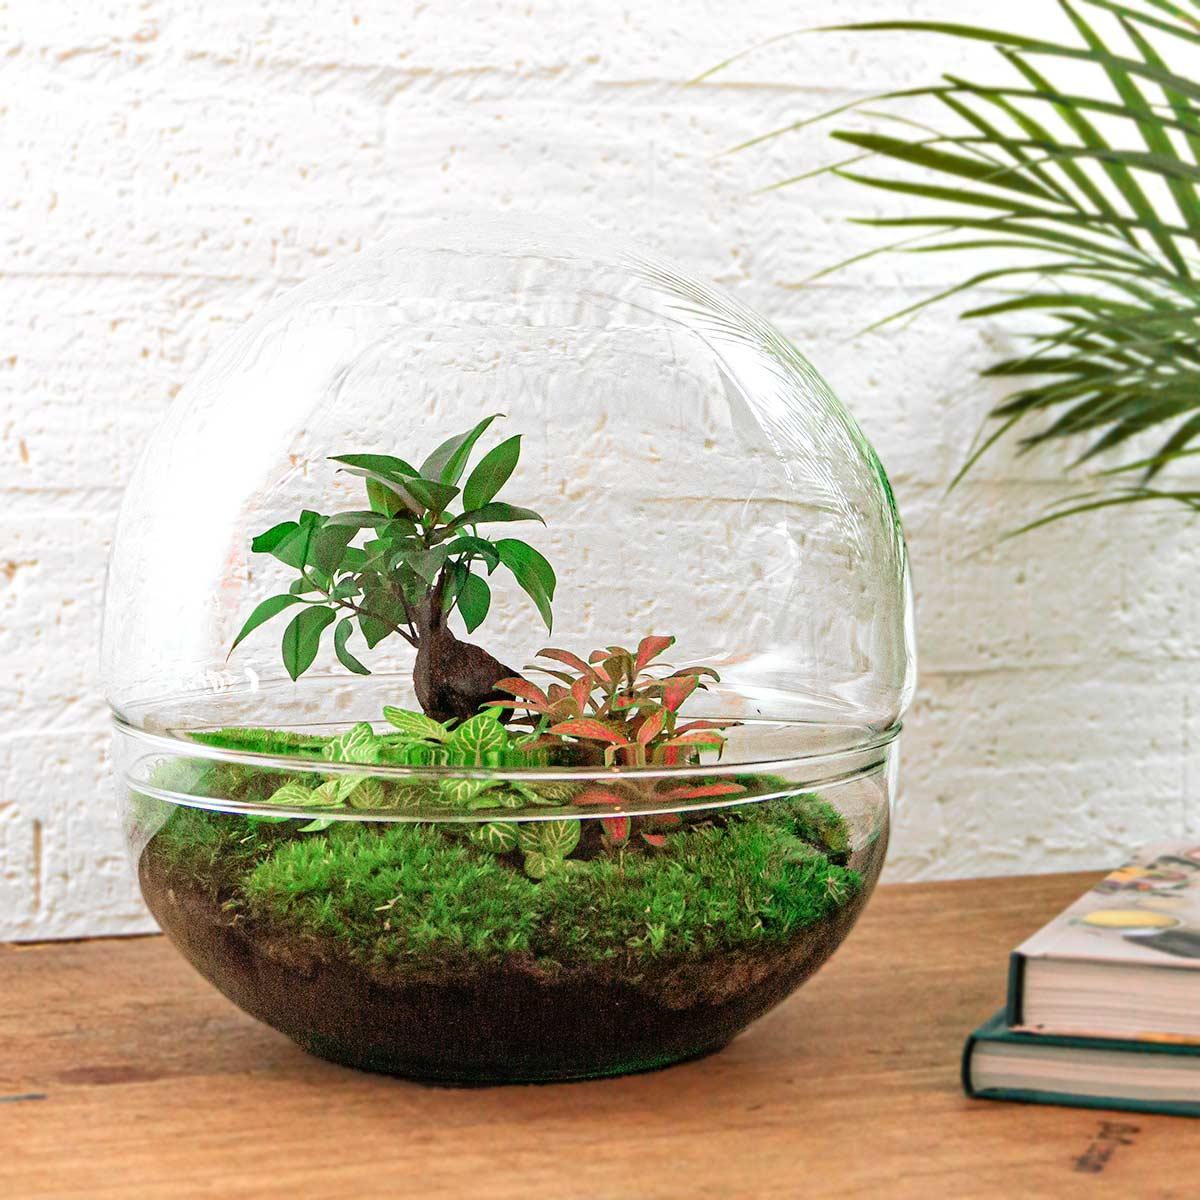 DIY terrarium - Dome XL - Ficus Ginseng Bonsai - ↕ 30 cm DIY terrarium - Dome XL - Ficus Ginseng Bonsai - ↕ 30 cm - Normal